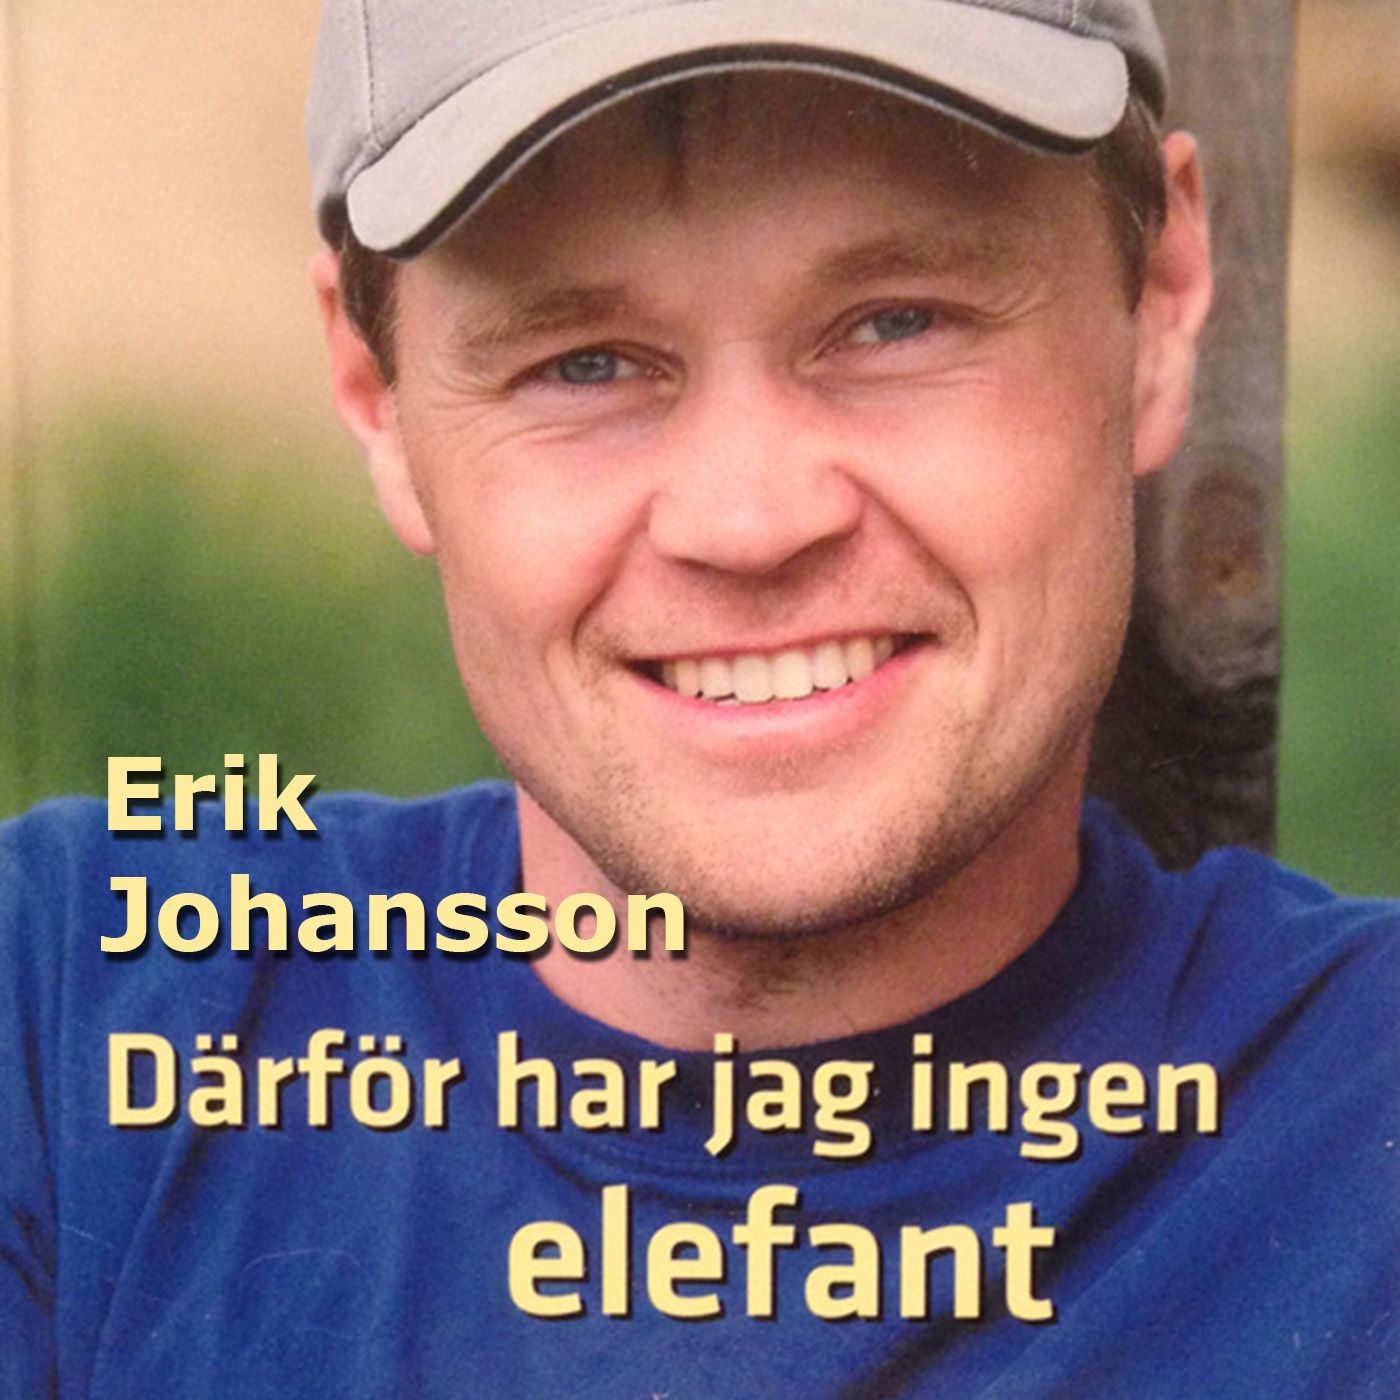 Därför har jag ingen elefant, ljudbok av Erik Johansson